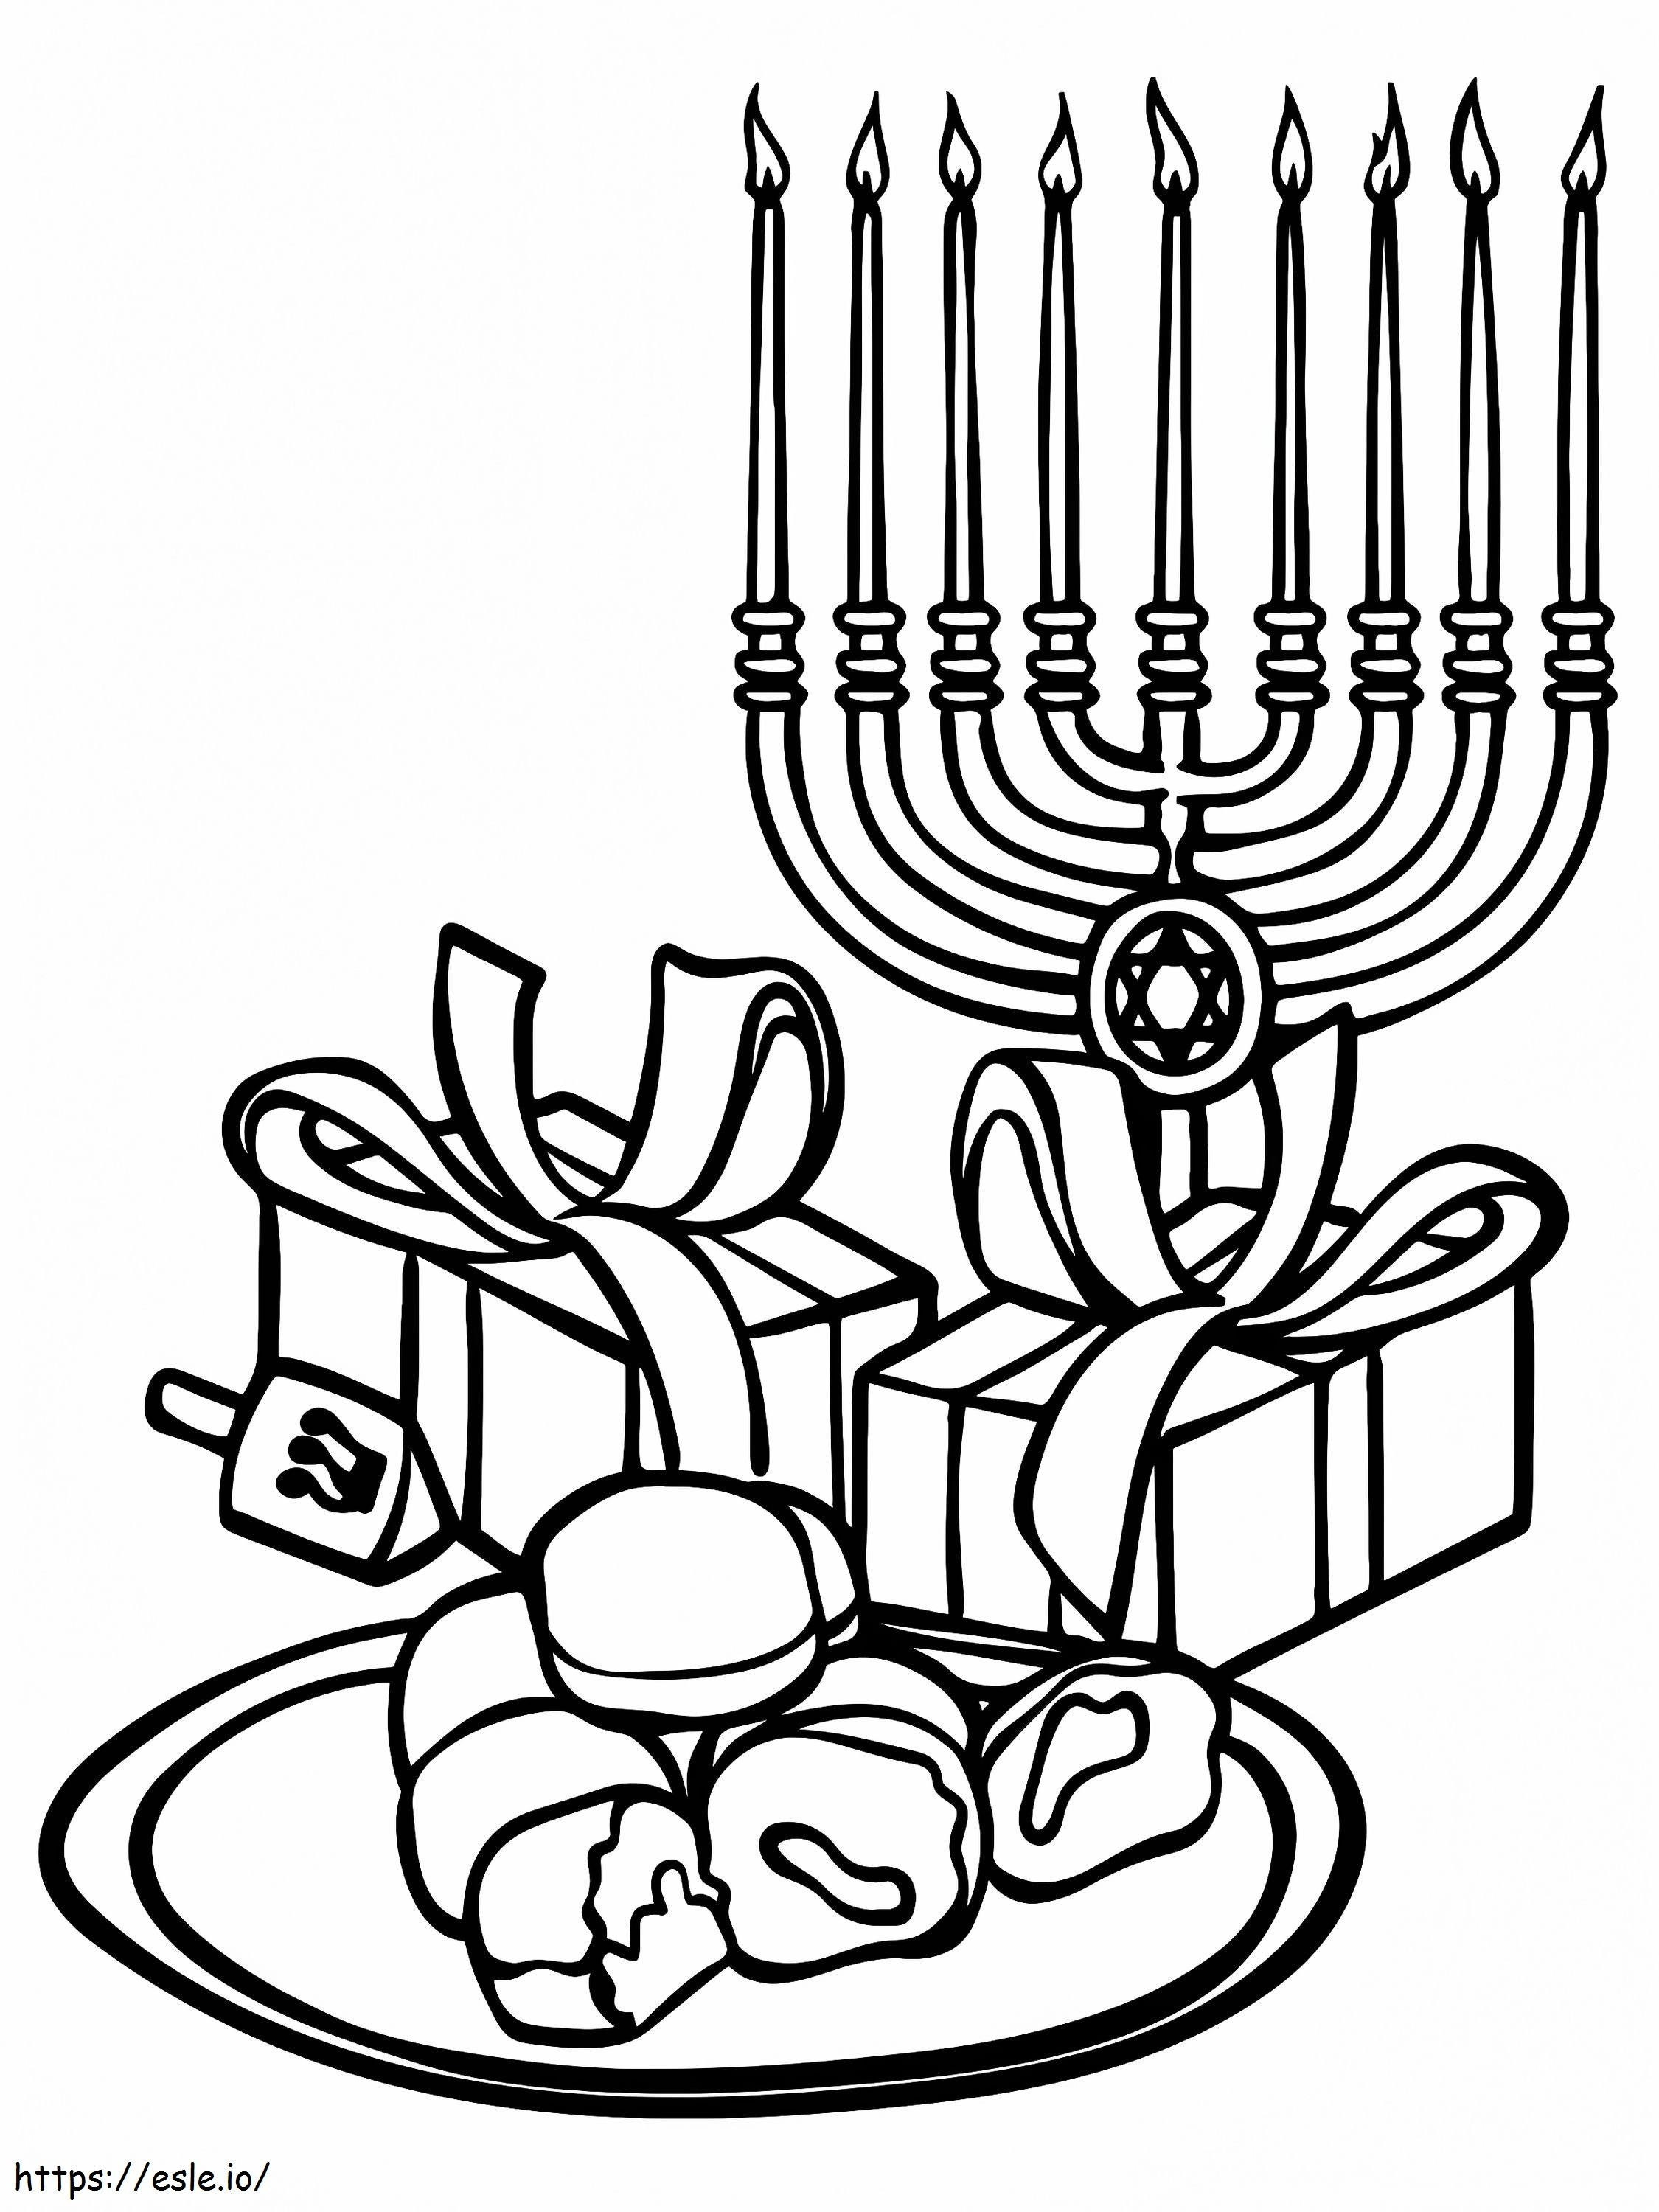 Hanukkah Gifts And Menorah coloring page